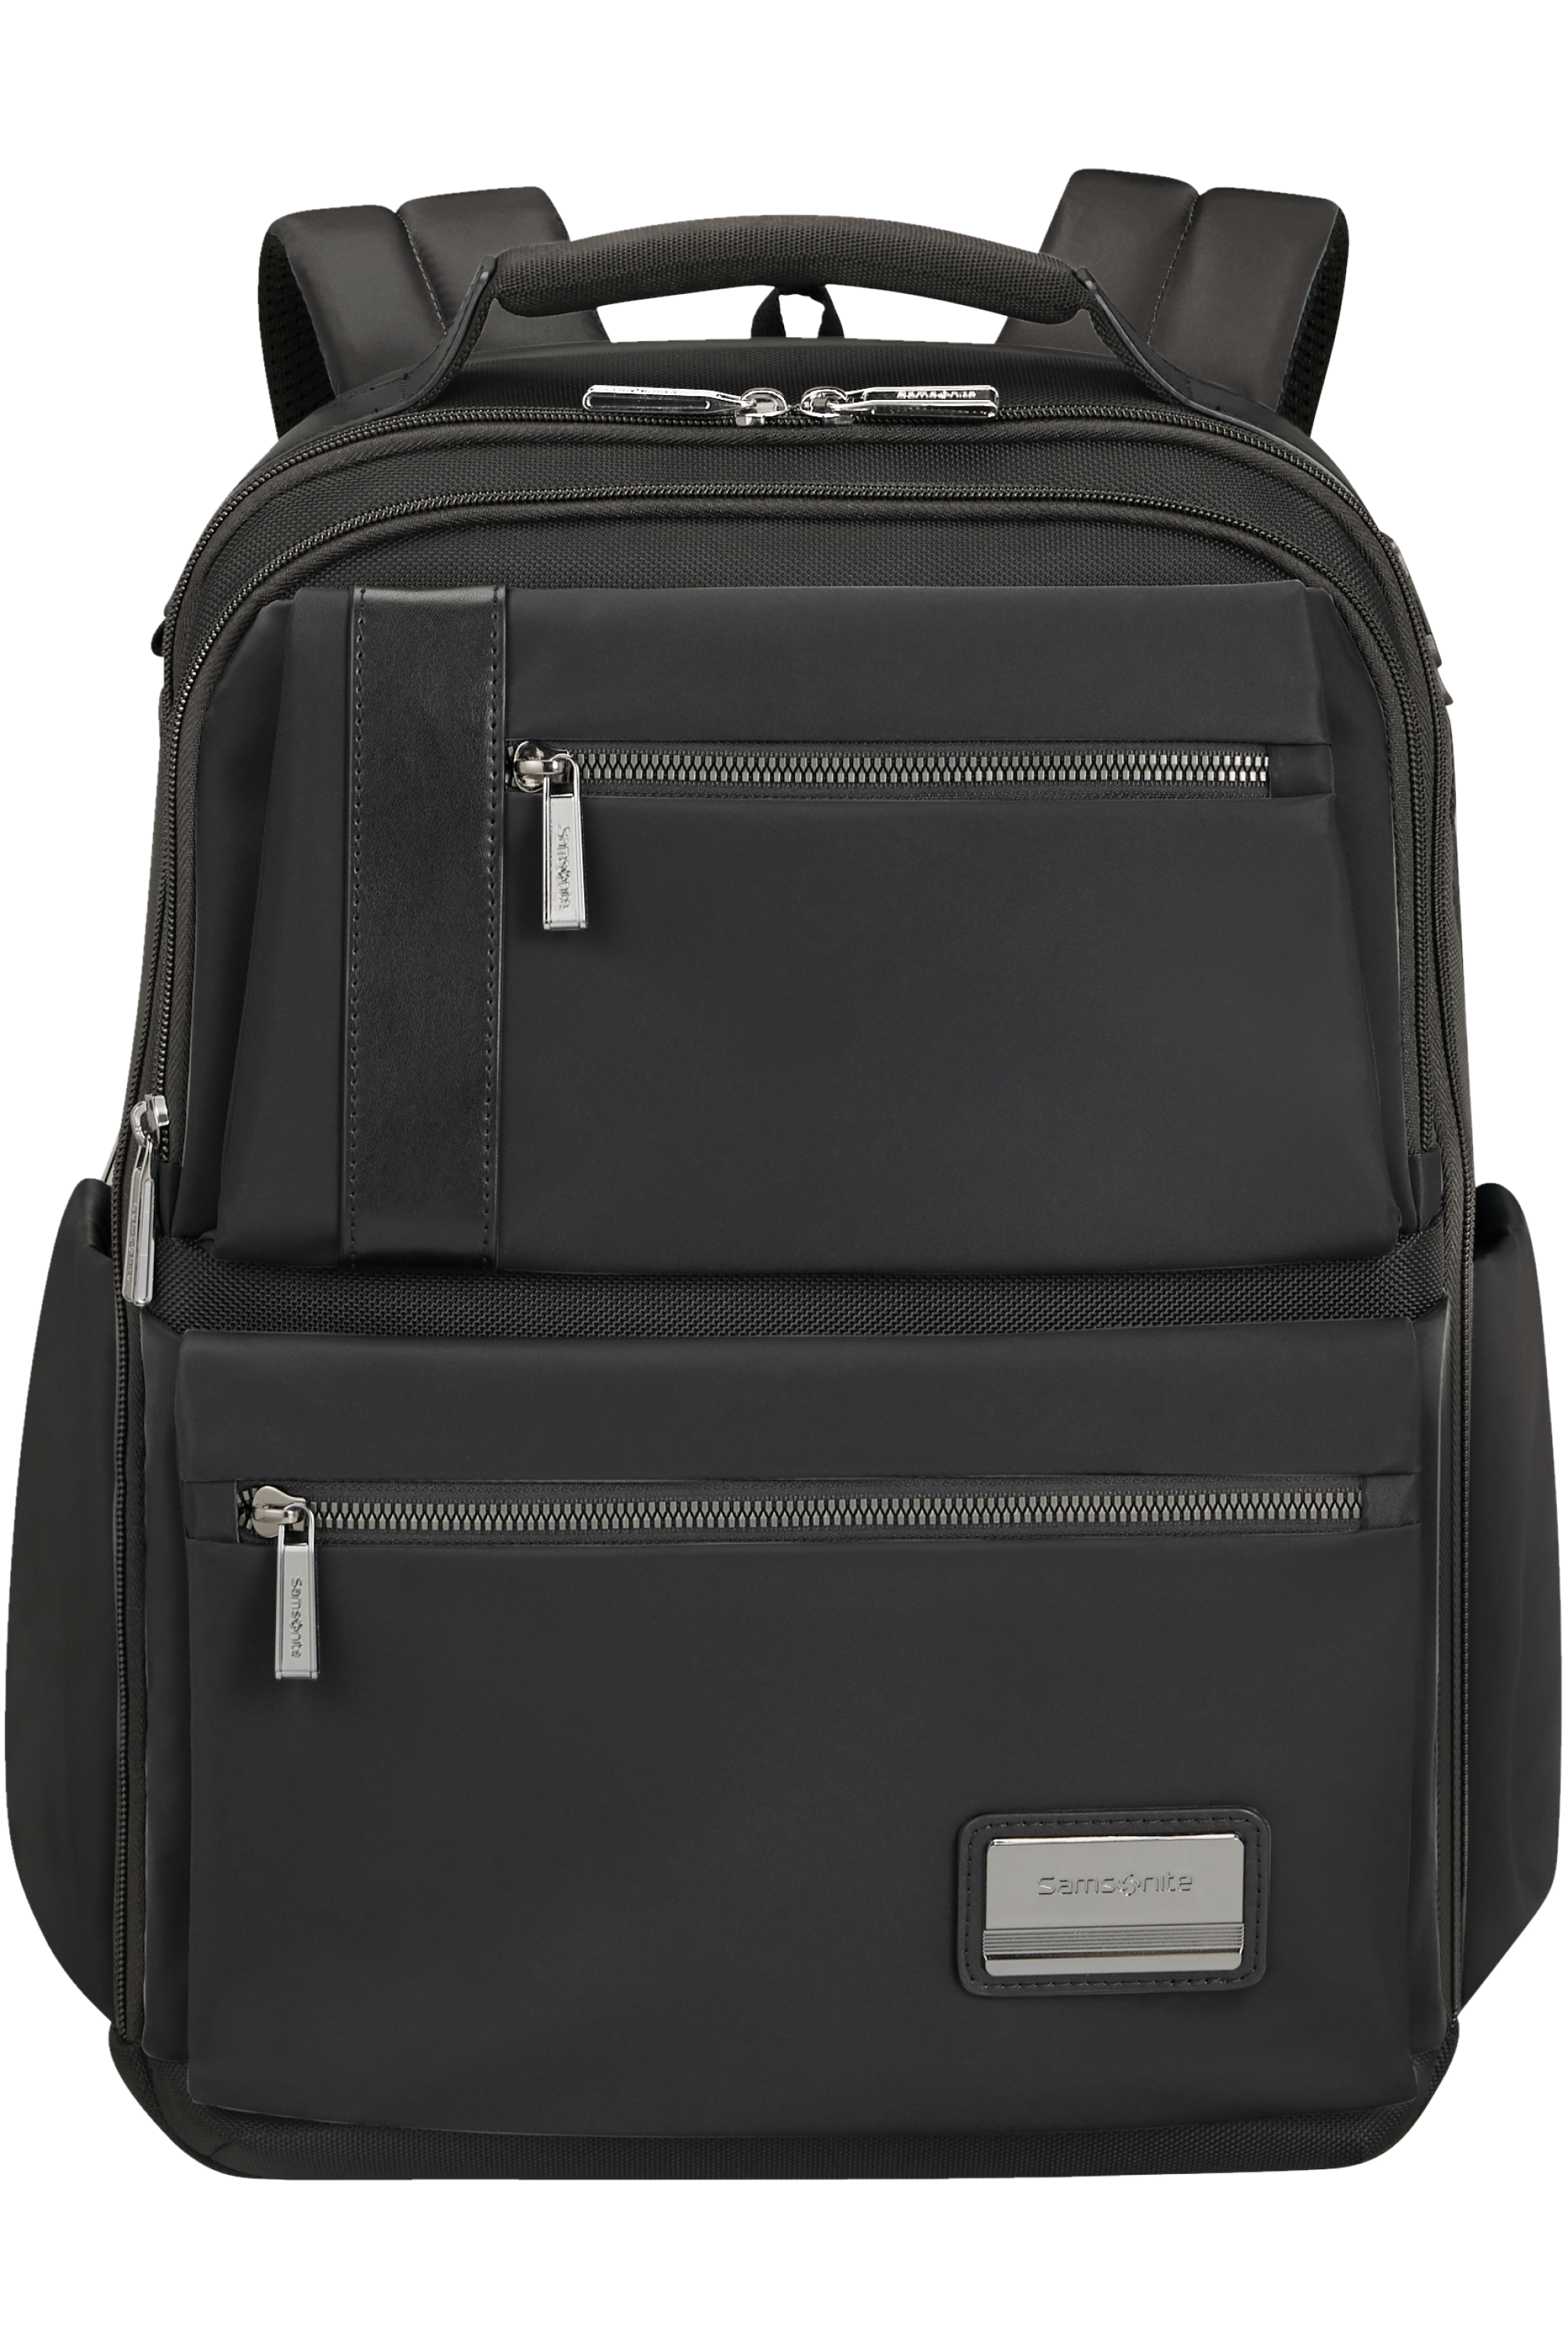 Samsonite Midtown Laptop Backpack 15.6